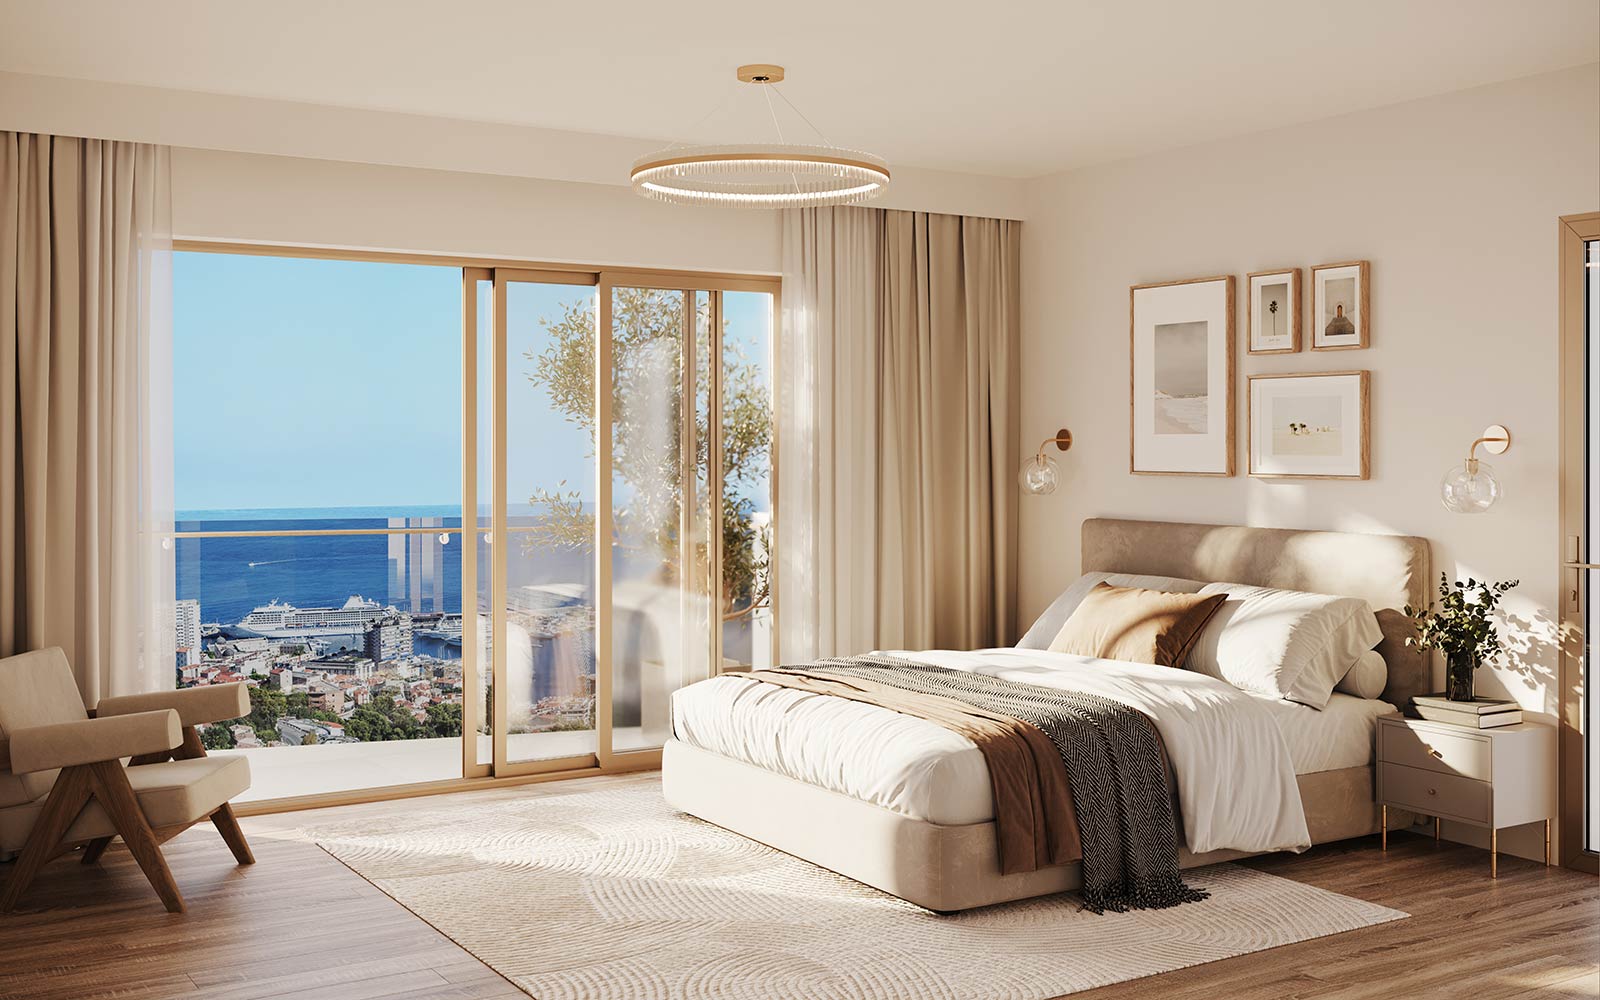 Voici une chambre du programme immobilier 29 Beausoleil à Monaco.